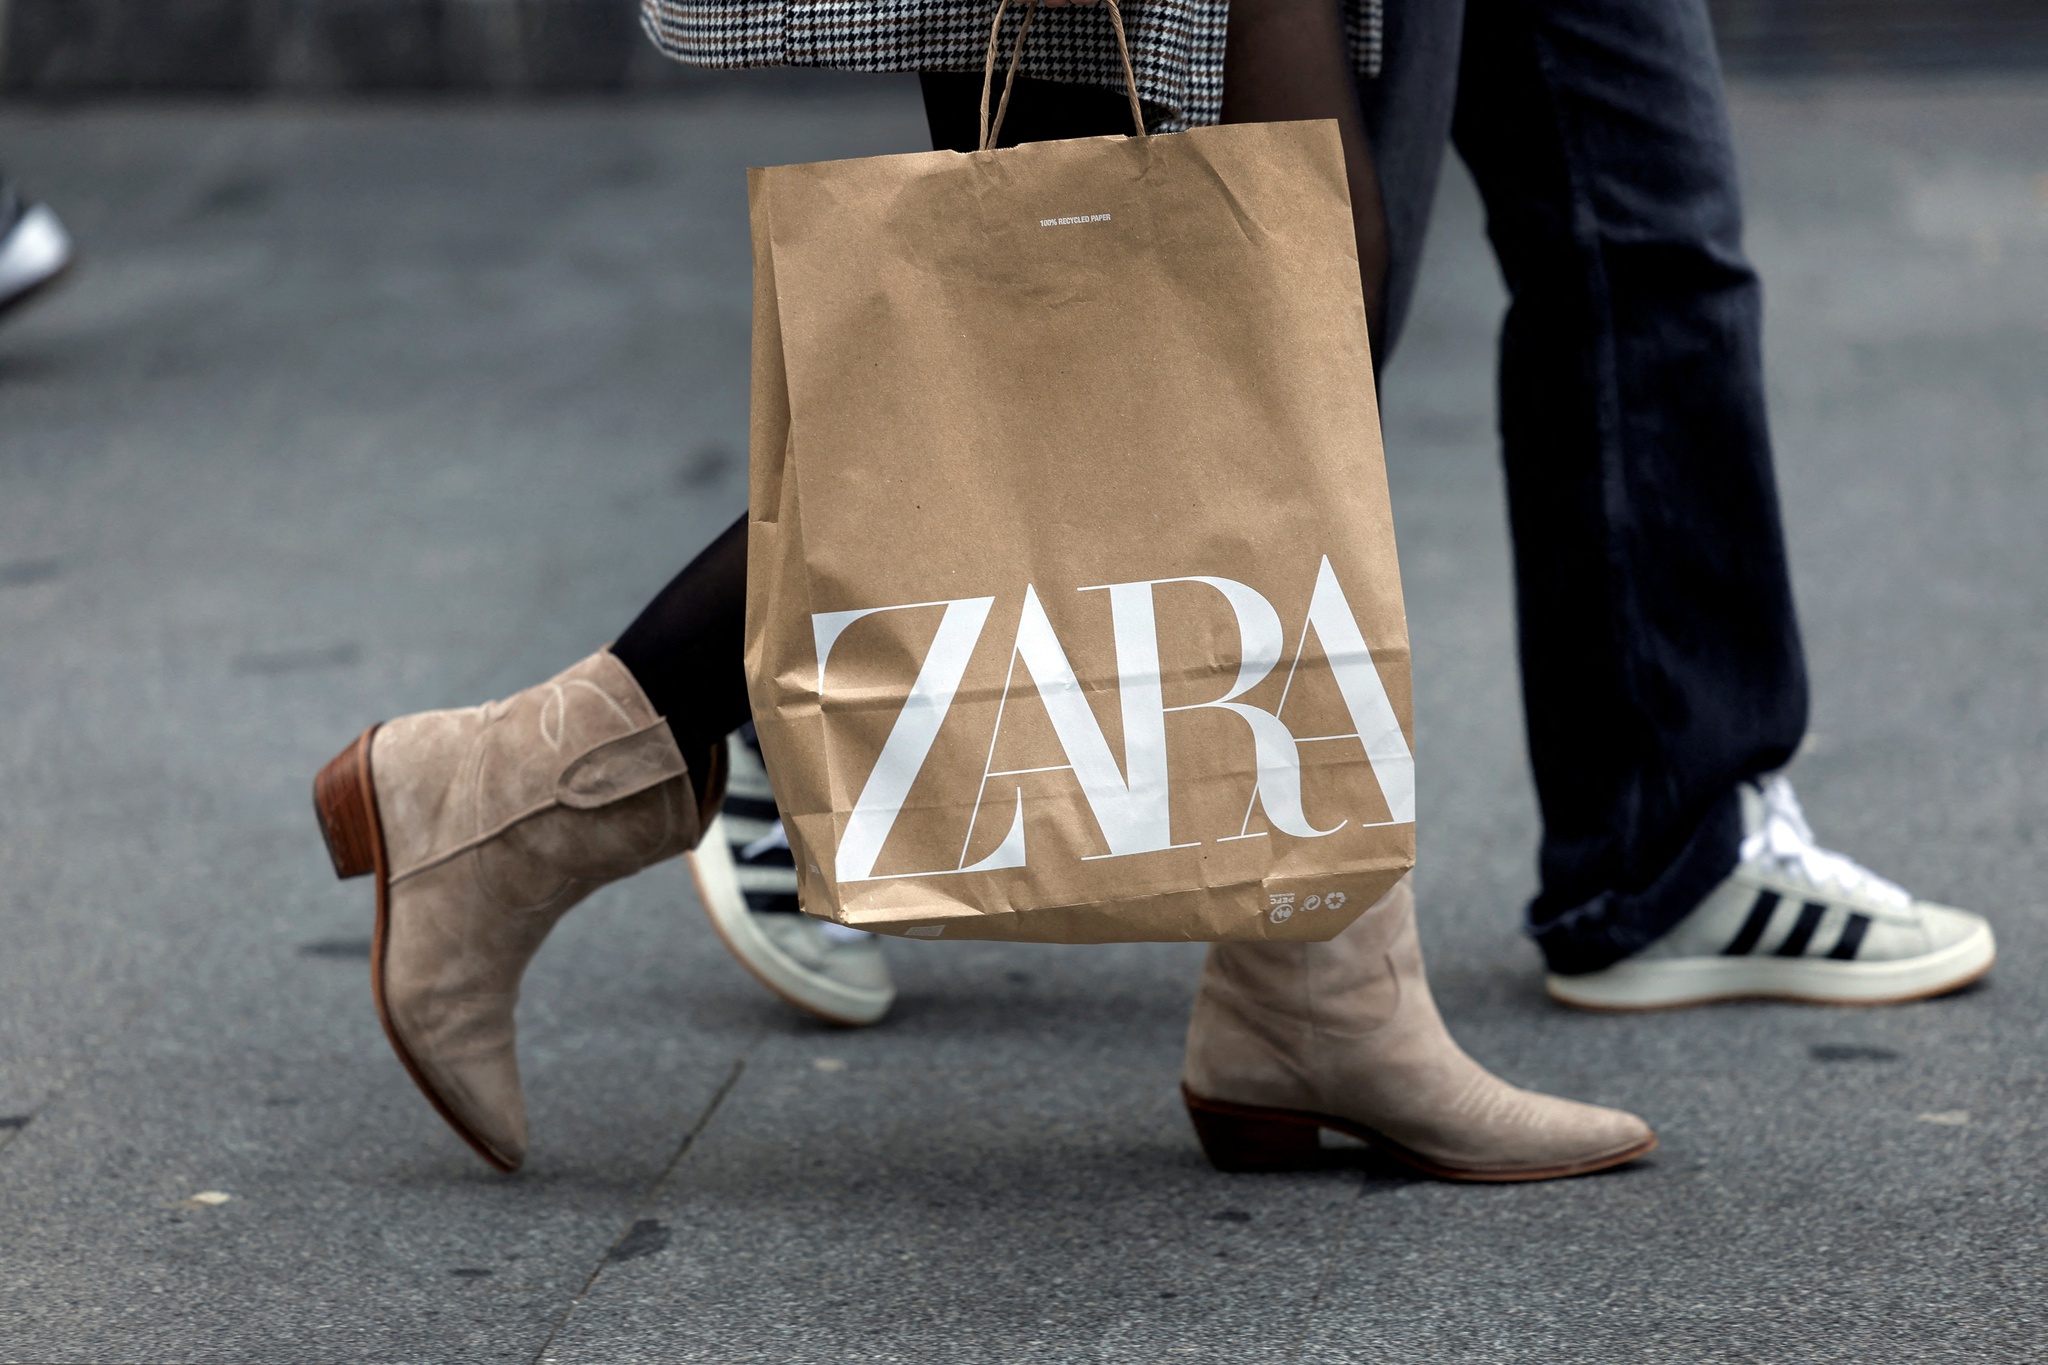 O novo conjunto desportivo da Zara é o mais confortável para usar